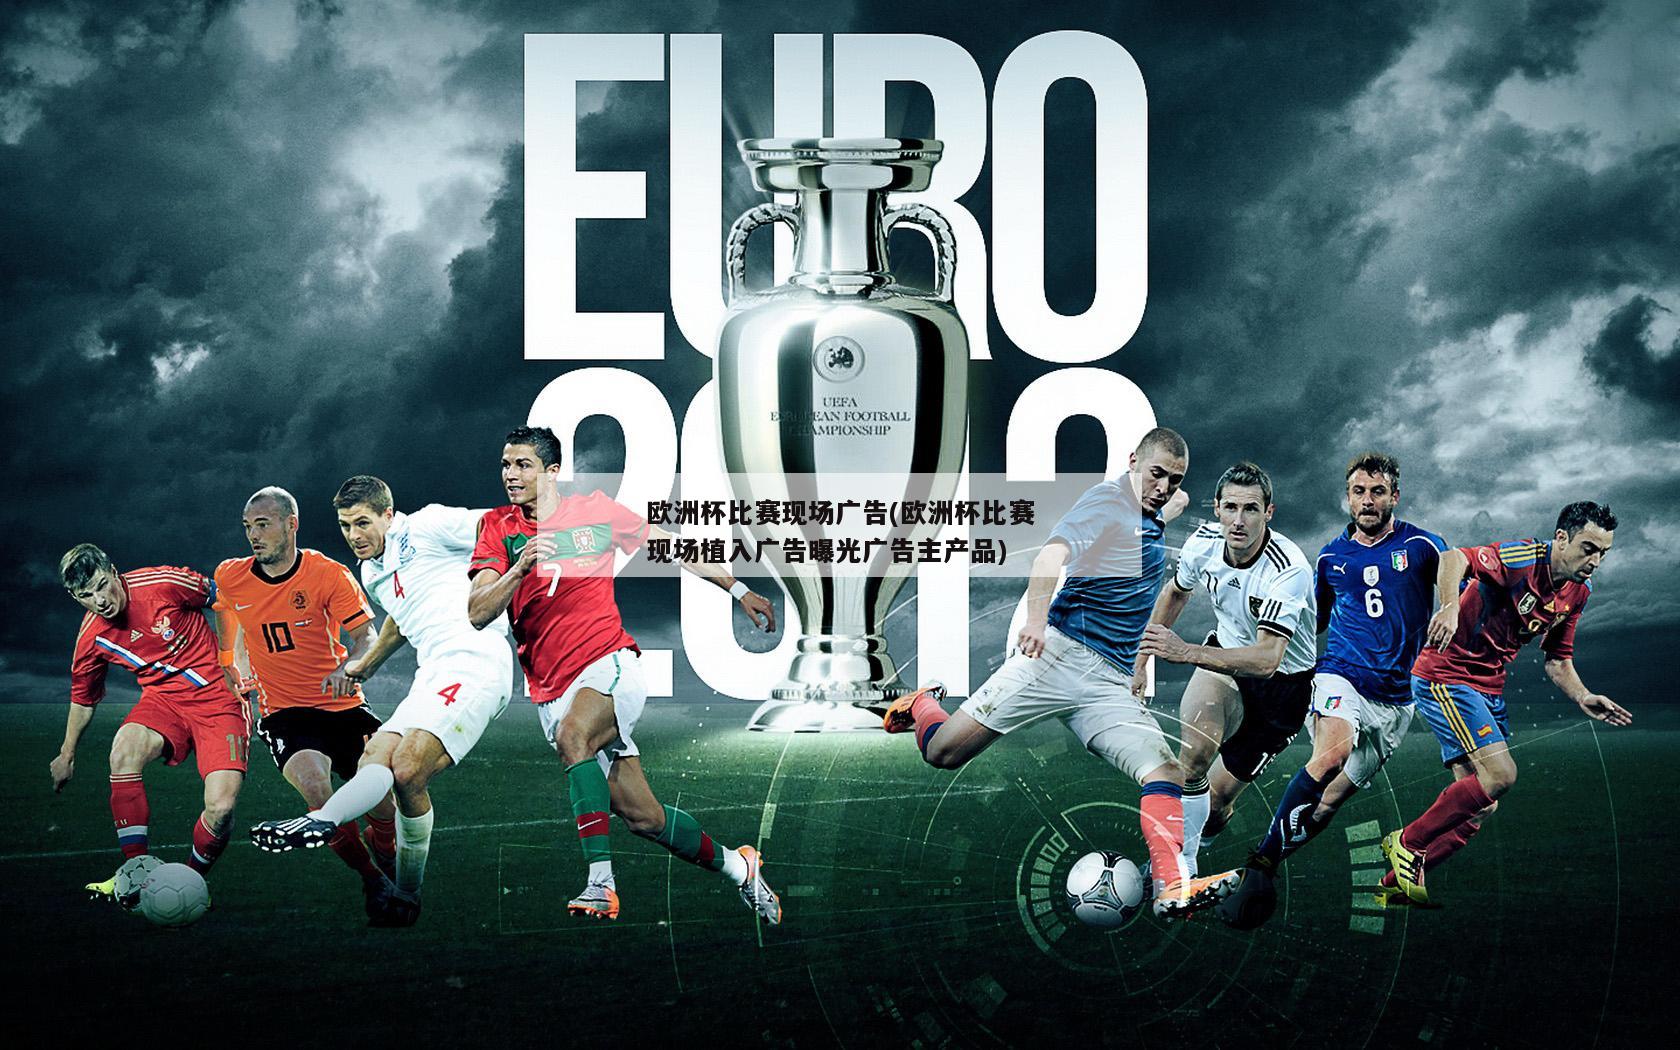 欧洲杯比赛现场广告(欧洲杯比赛现场植入广告曝光广告主产品)